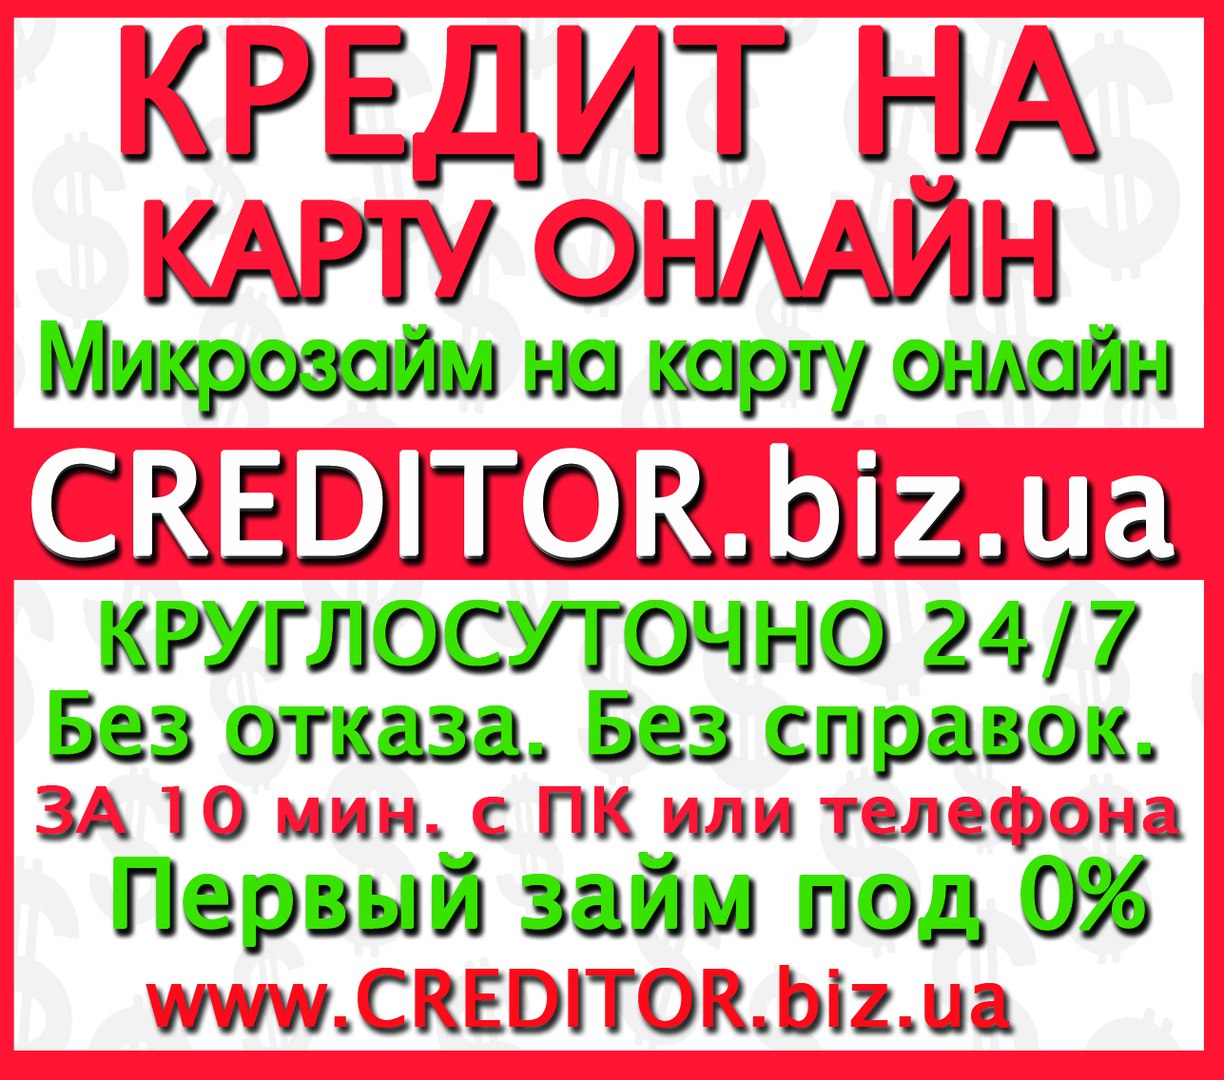 Займы онлайн круглосуточно в Грозном по паспорту